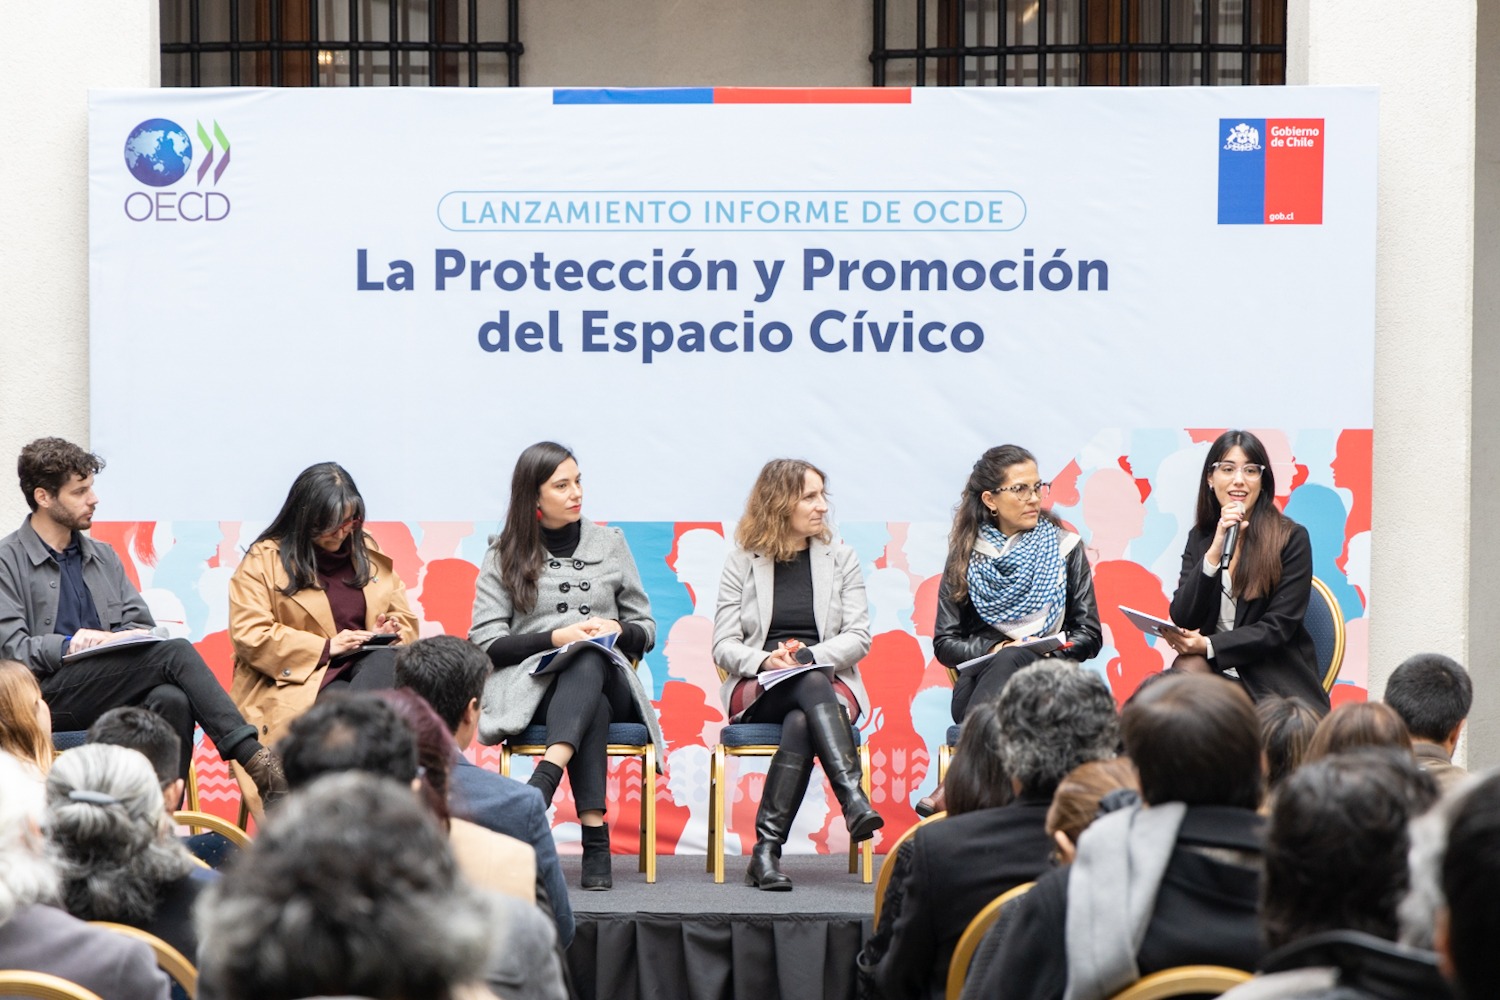 OCDE presenta en Chile informe sobre protección del espacio cívico: destaca importancia de las comunicaciones y la participación ciudadana